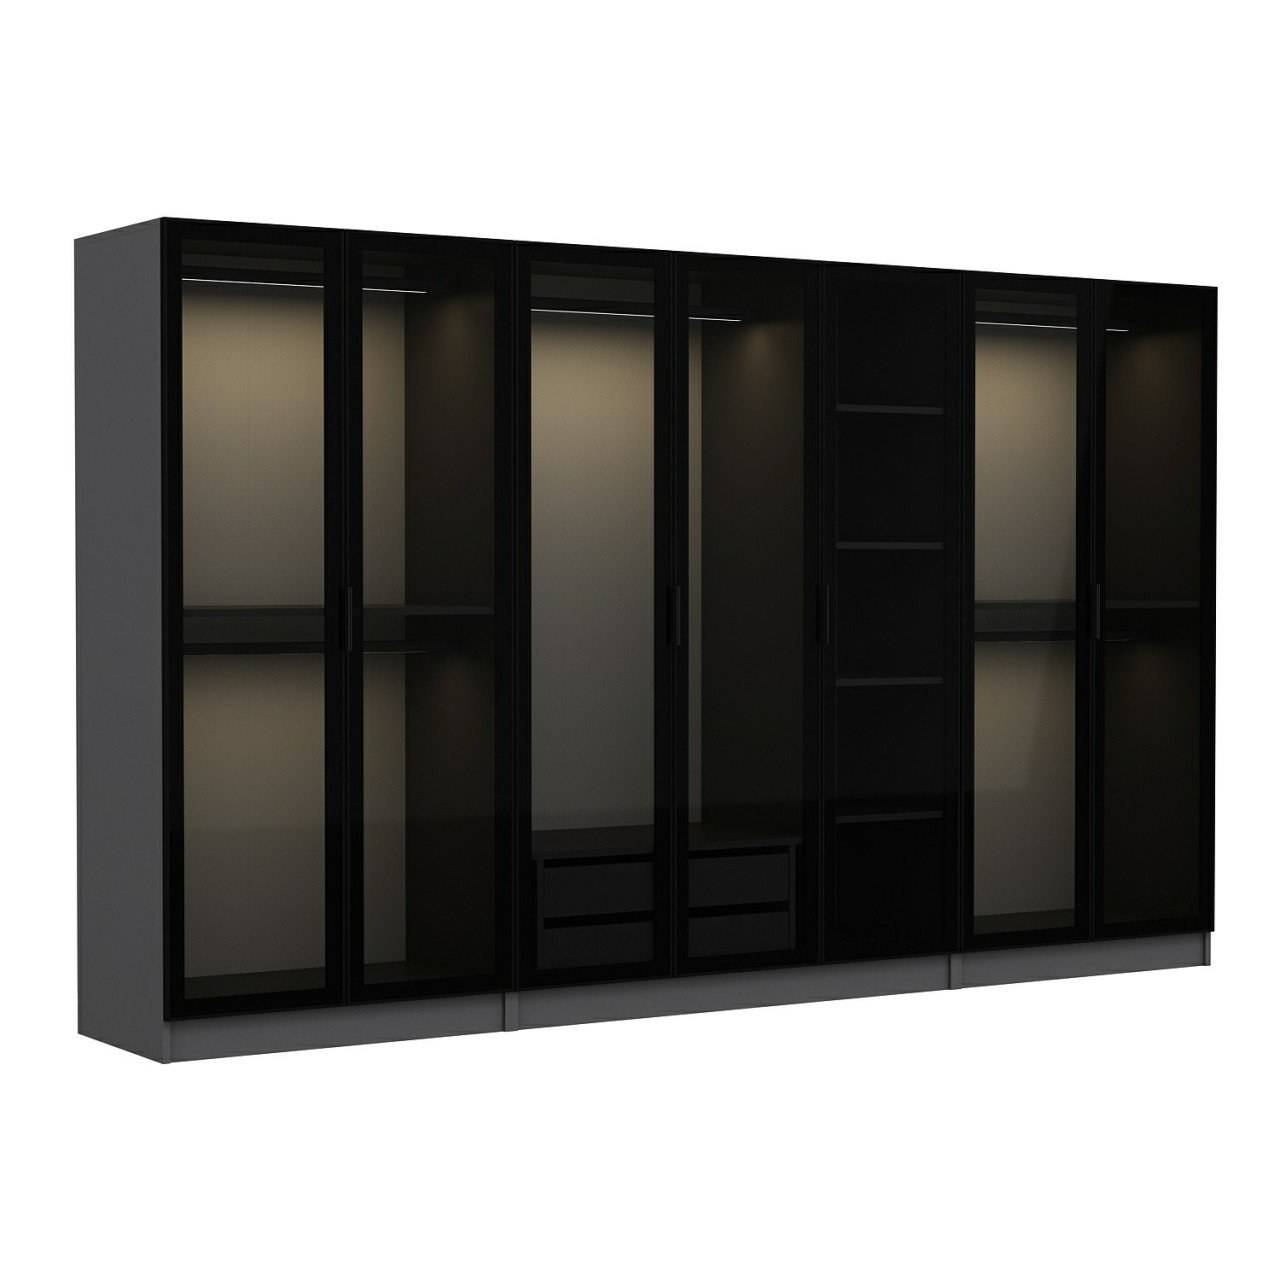 Armario 7 puertas Cristal ahumado Negro Antipaxos L315xH190cm 5 barras y 2 cajones Antracita